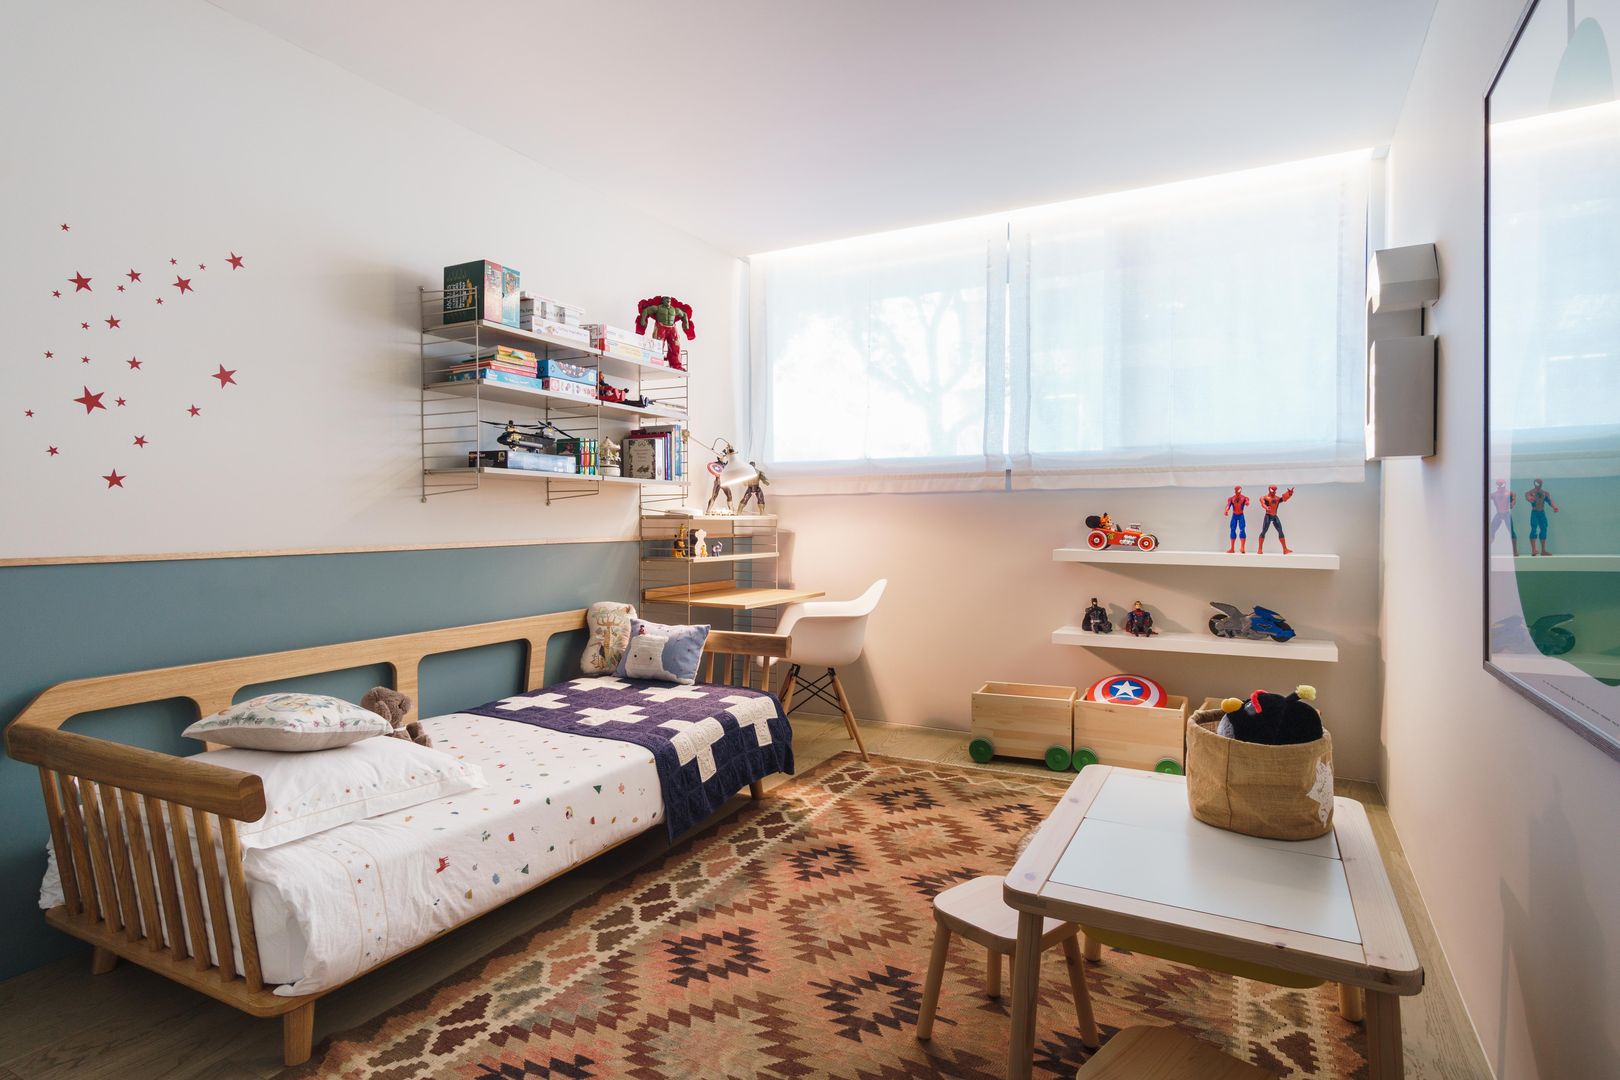 Las estanterías más trendy están en el cuarto infantil - DecoPeques   Habitaciones infantiles, Decoración de unas, Decorar habitacion bebe